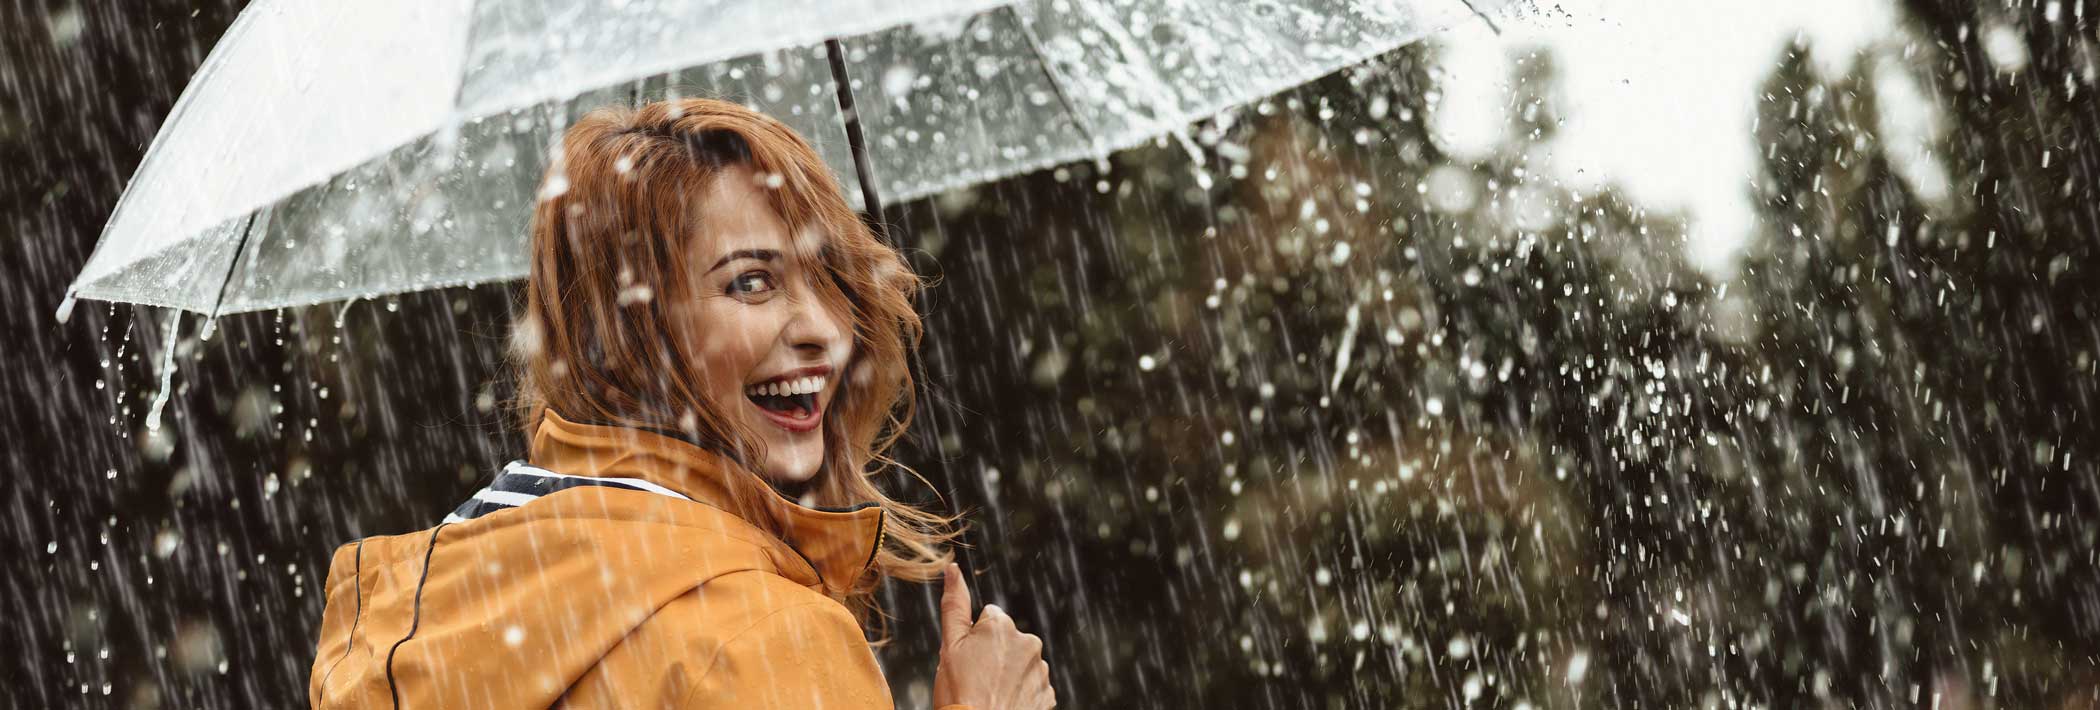 Eine fröhliche Frau mit Schirm schaut über ihre Schulter